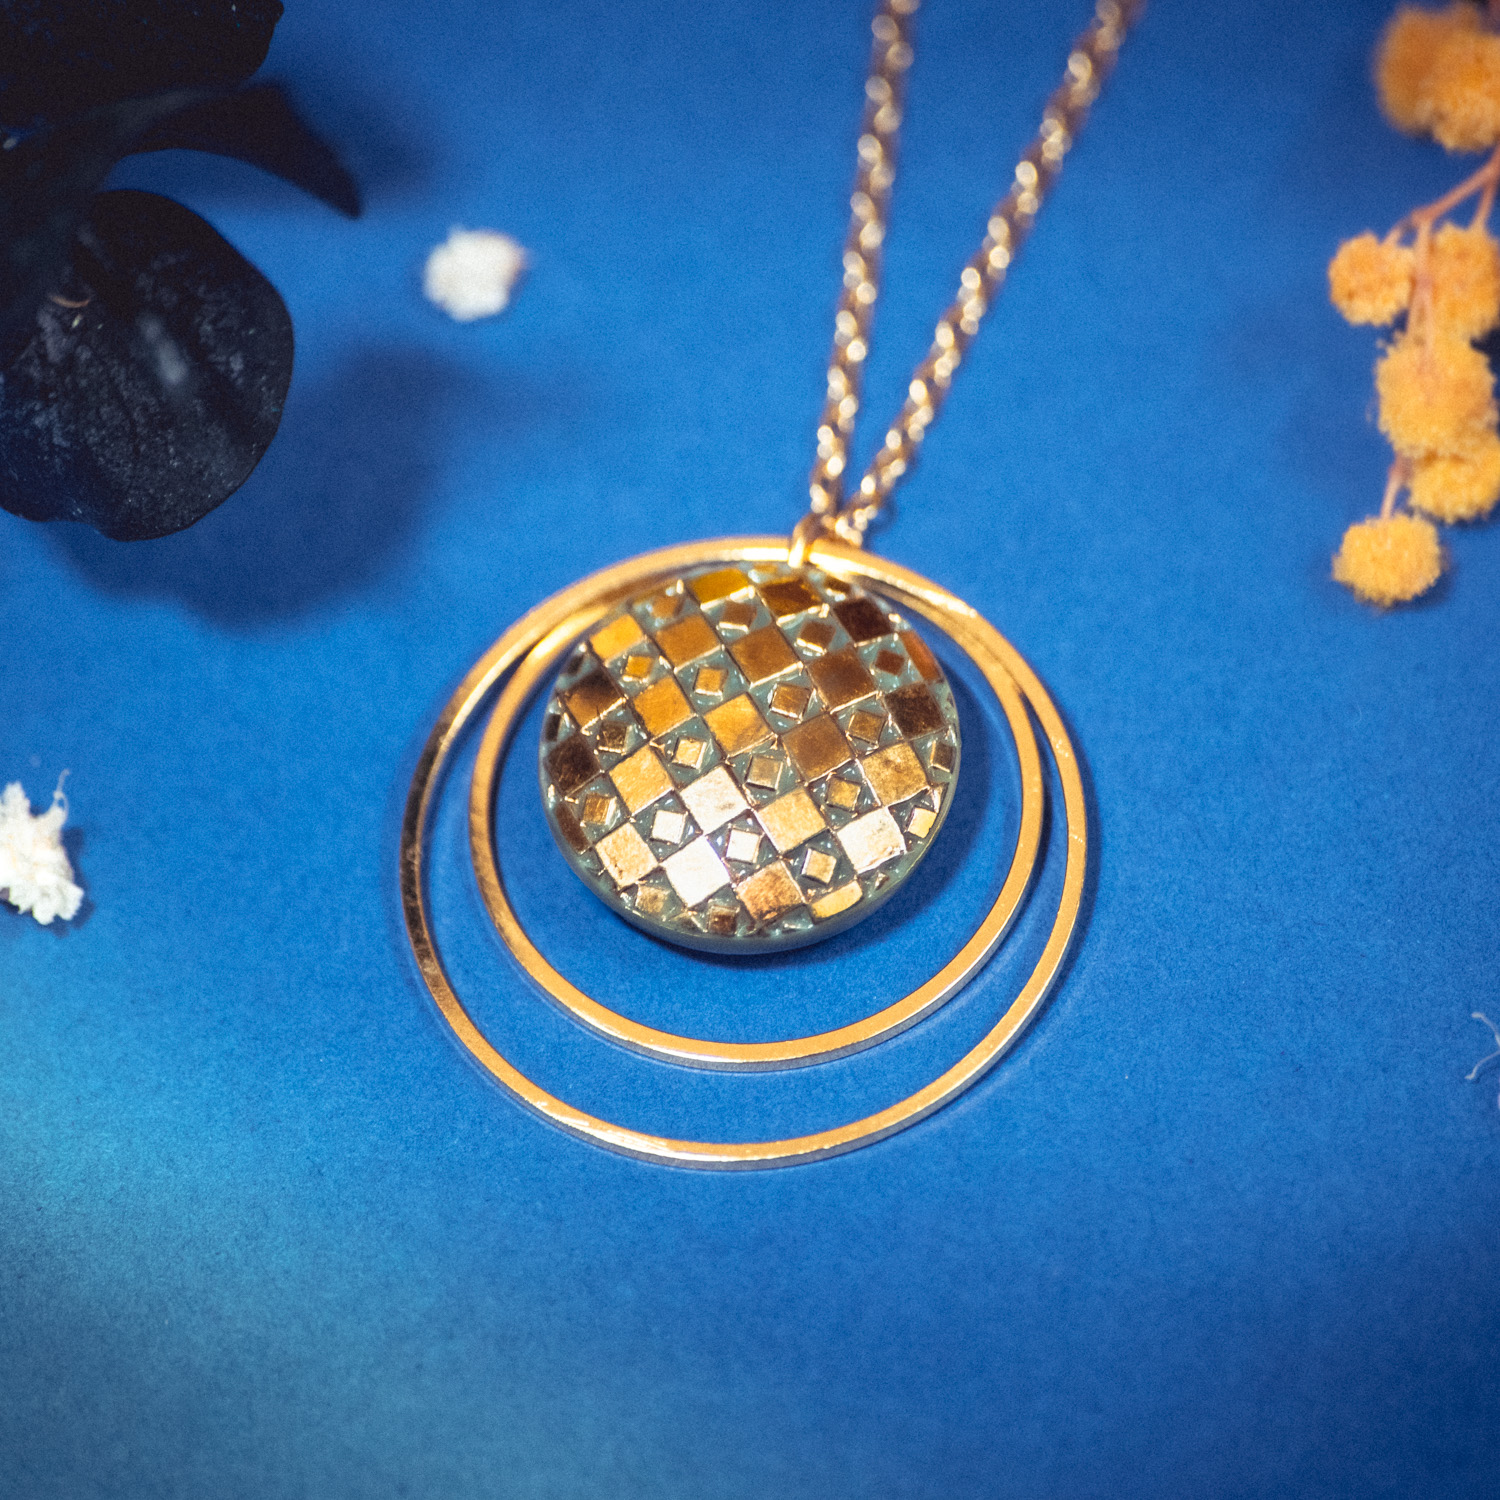 Assuna – Collier Lunare Eugénie kaki – bouton ancien 1940 – collier d’inspiration vintage en forme de croissant de lune